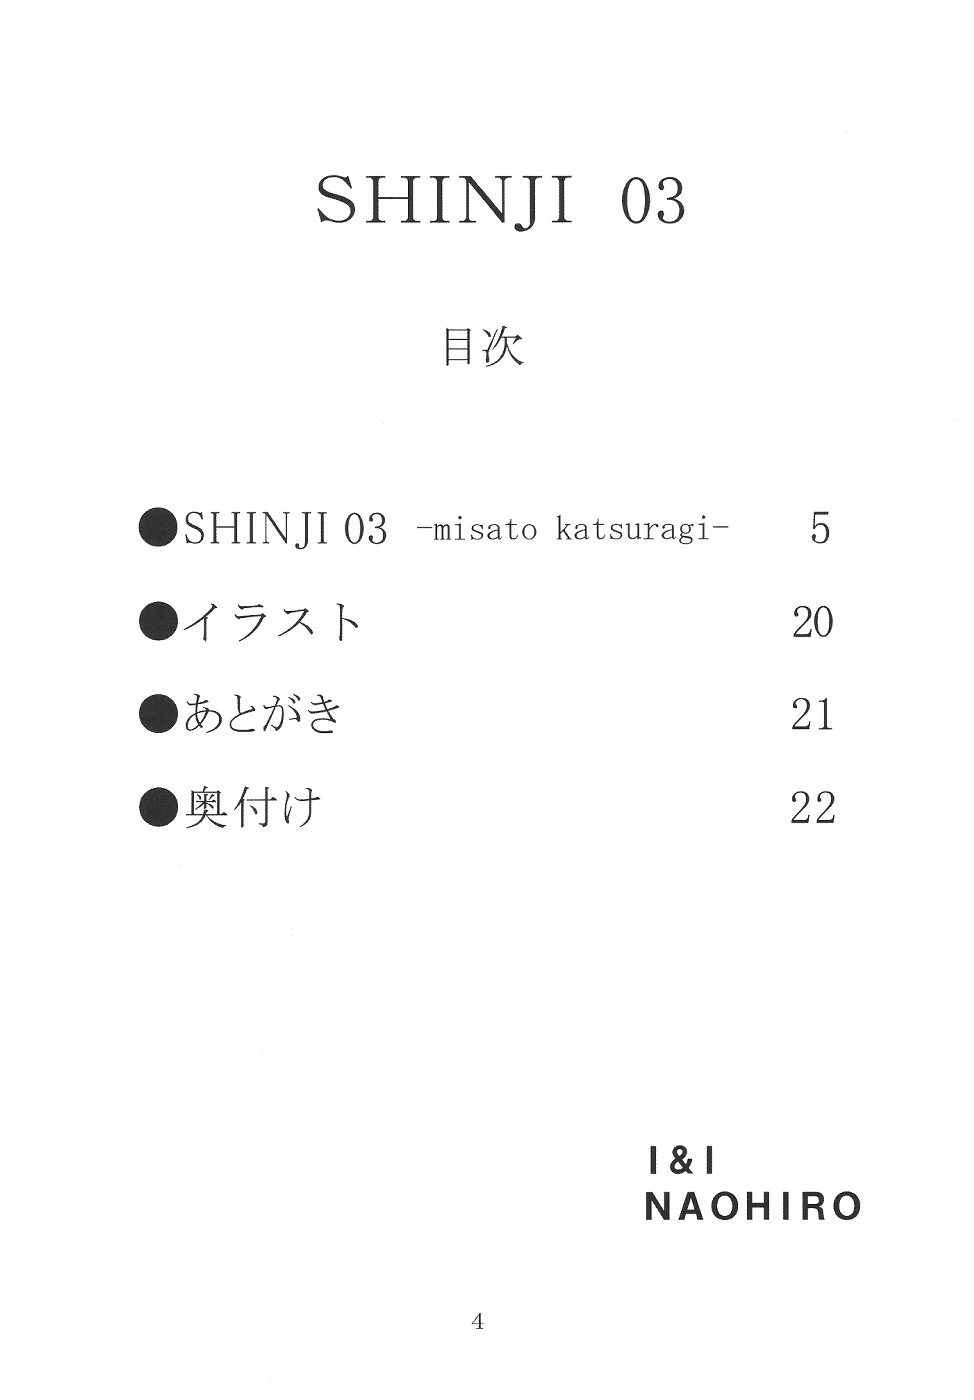 (CSP4) [I&I (NAOHIRO)] SHINJI 03 (新世紀エヴァンゲリオン)